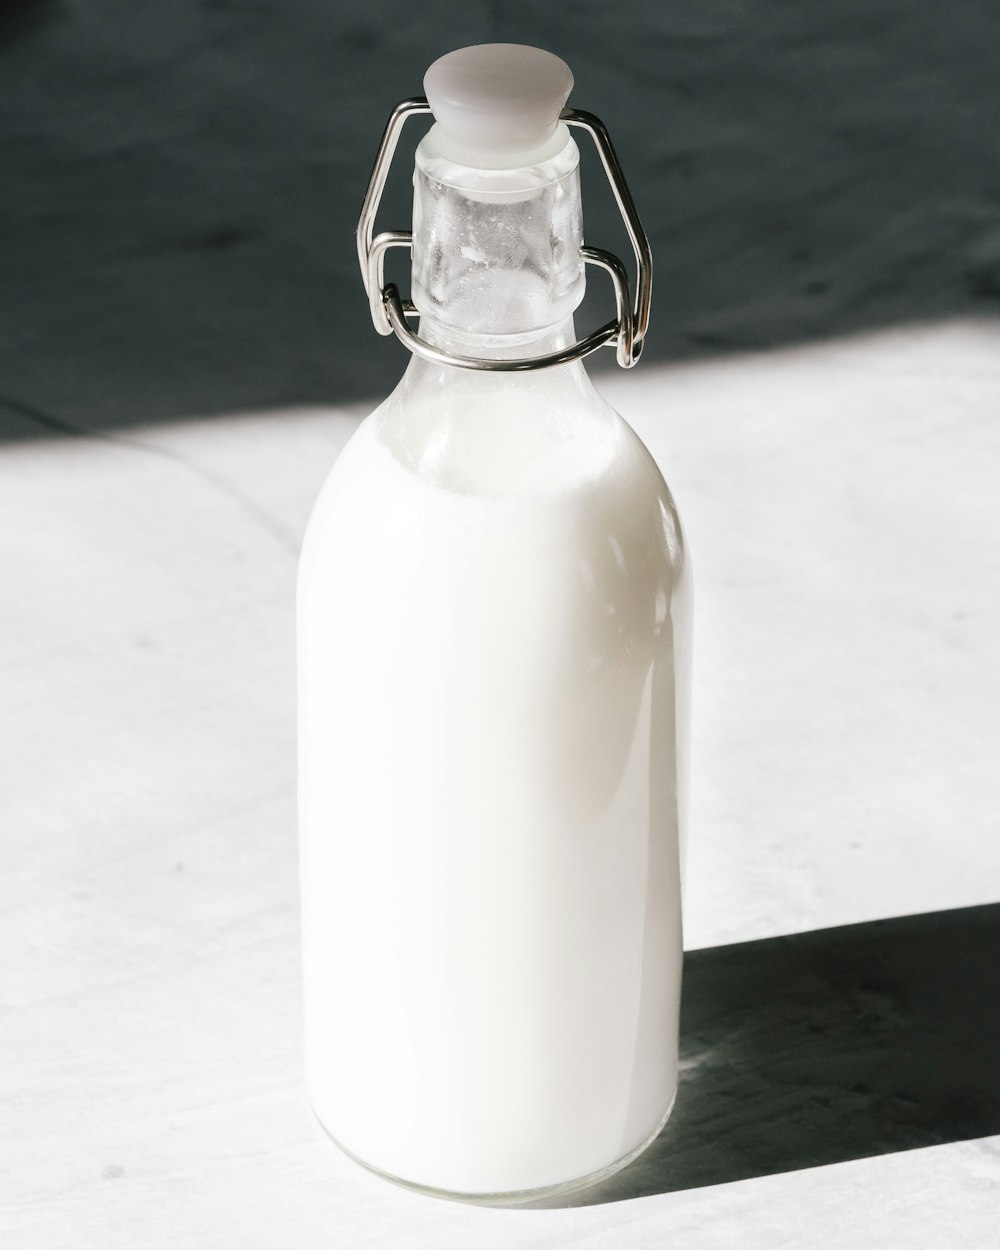 milk in clear glass bottle